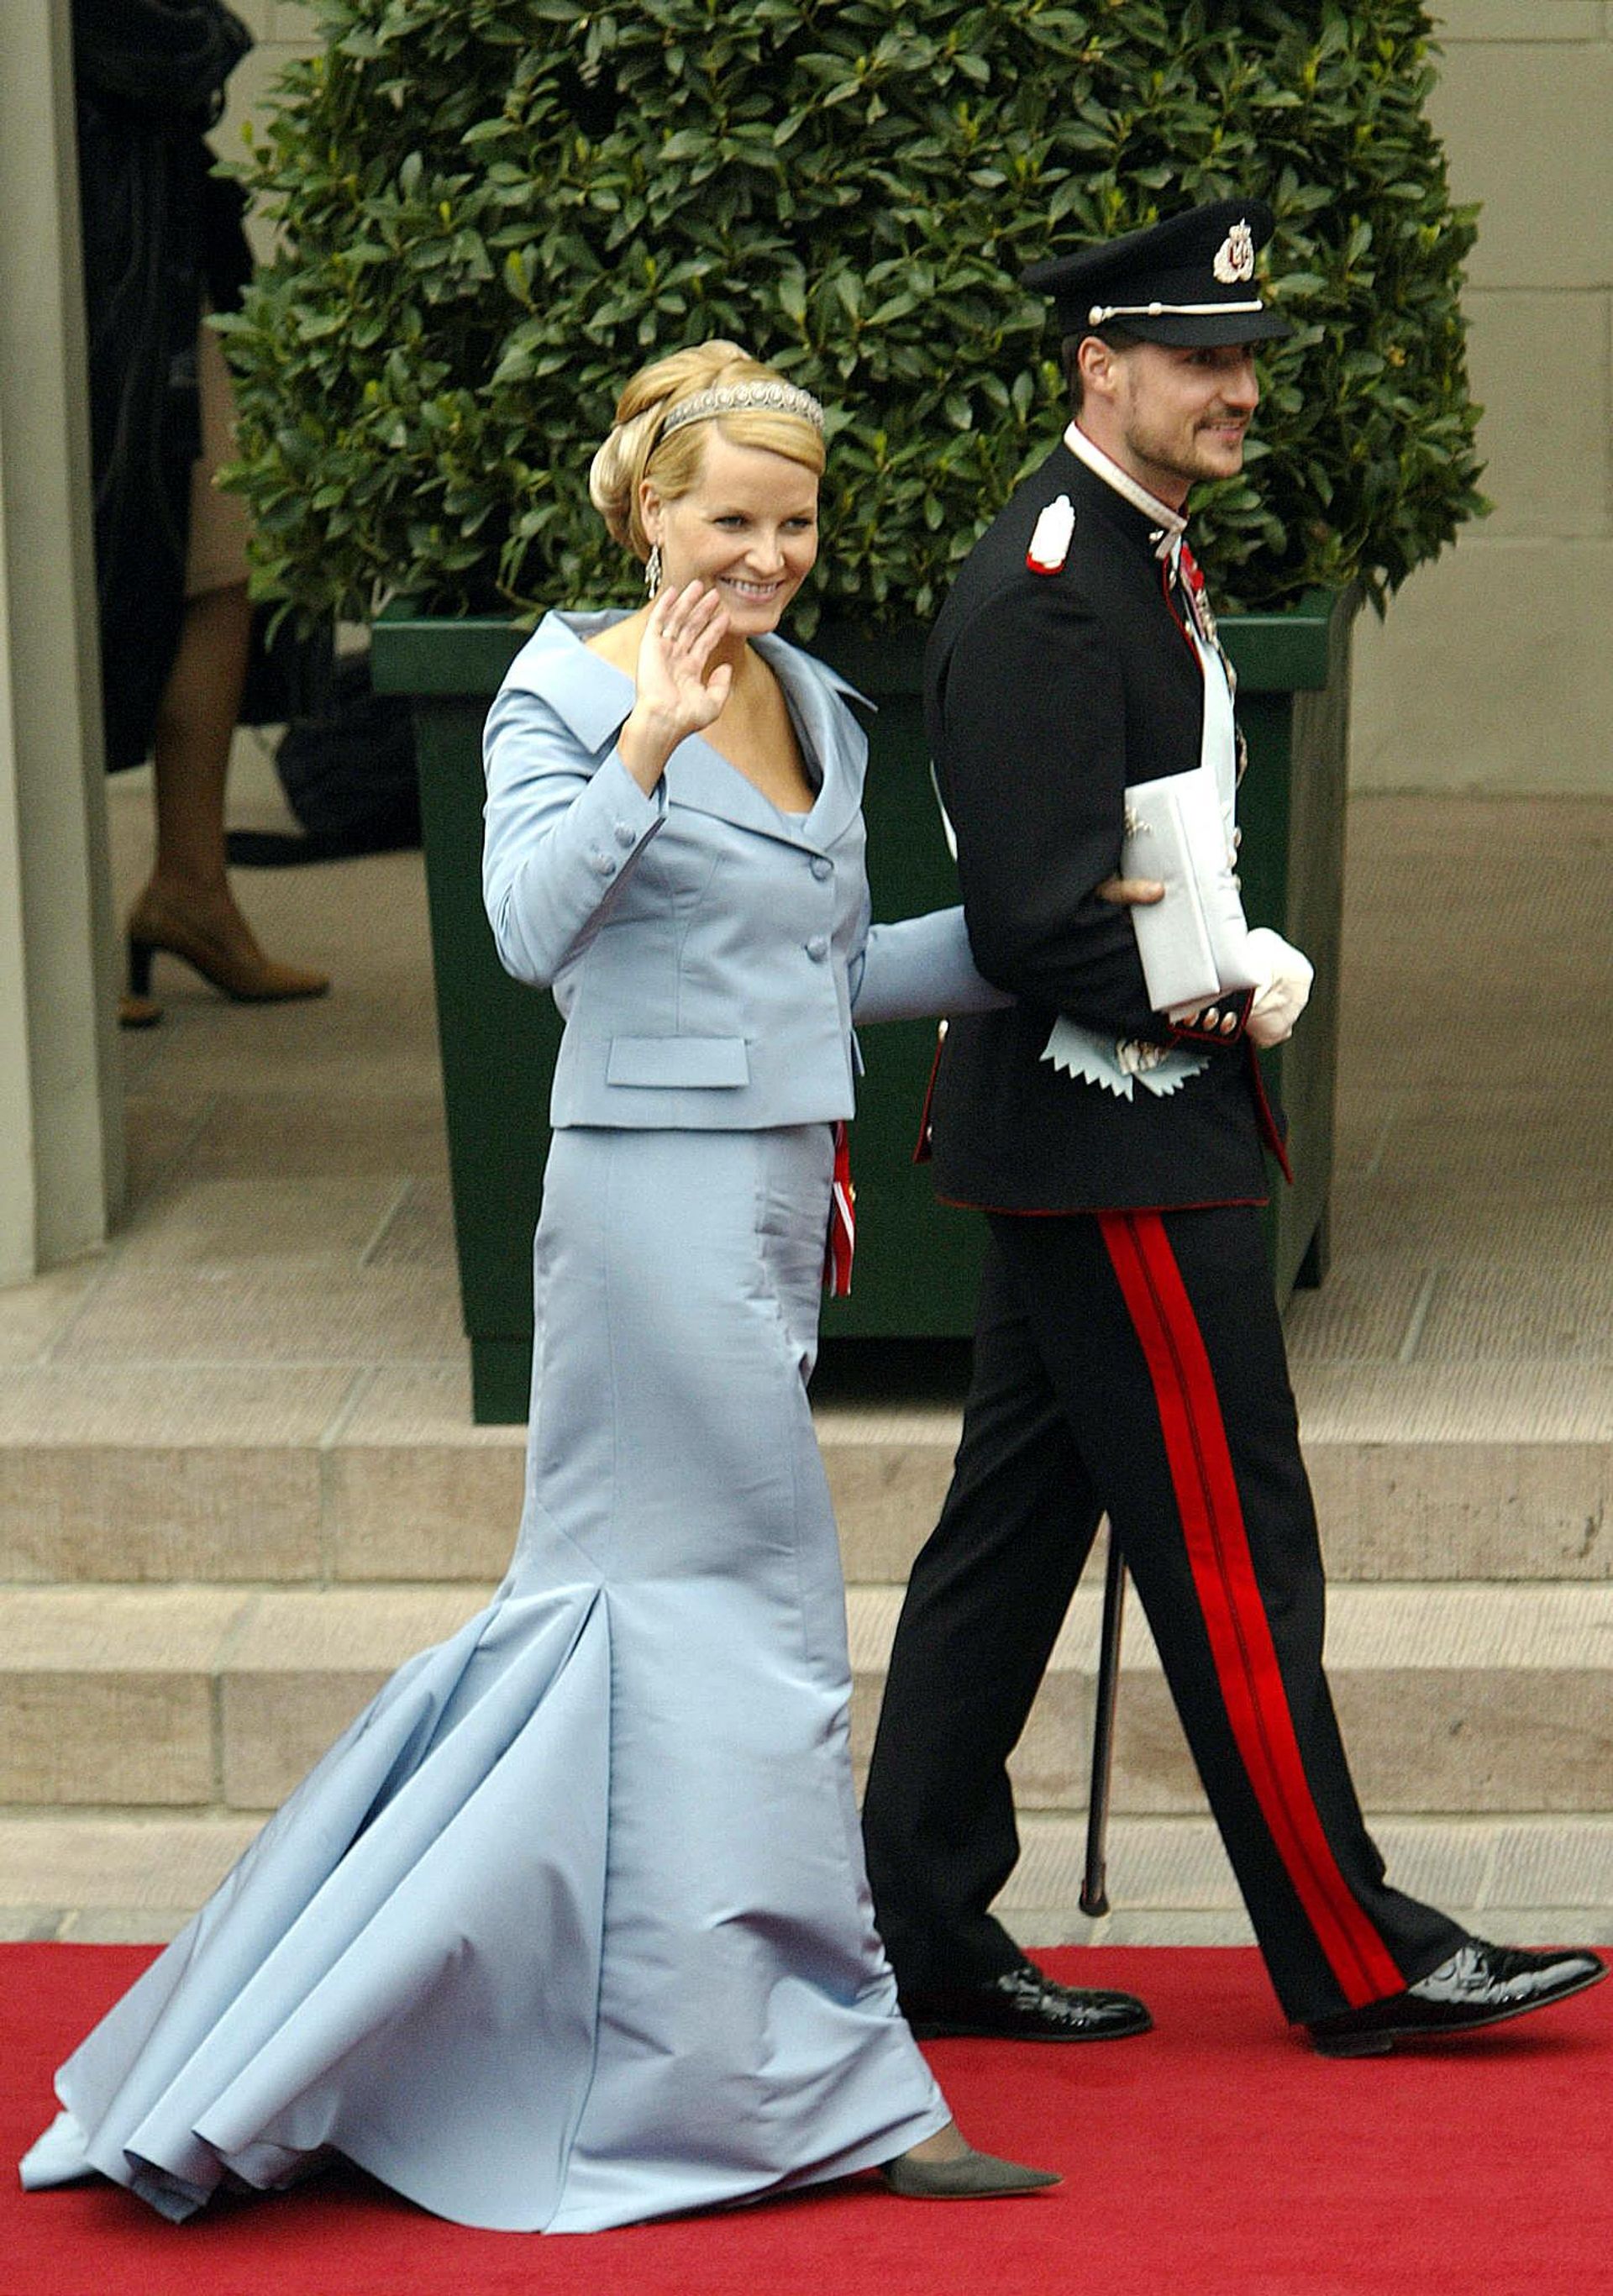 Kroonprins Haakon van Noorwegen en zijn vrouw prinses Mette-Marit.